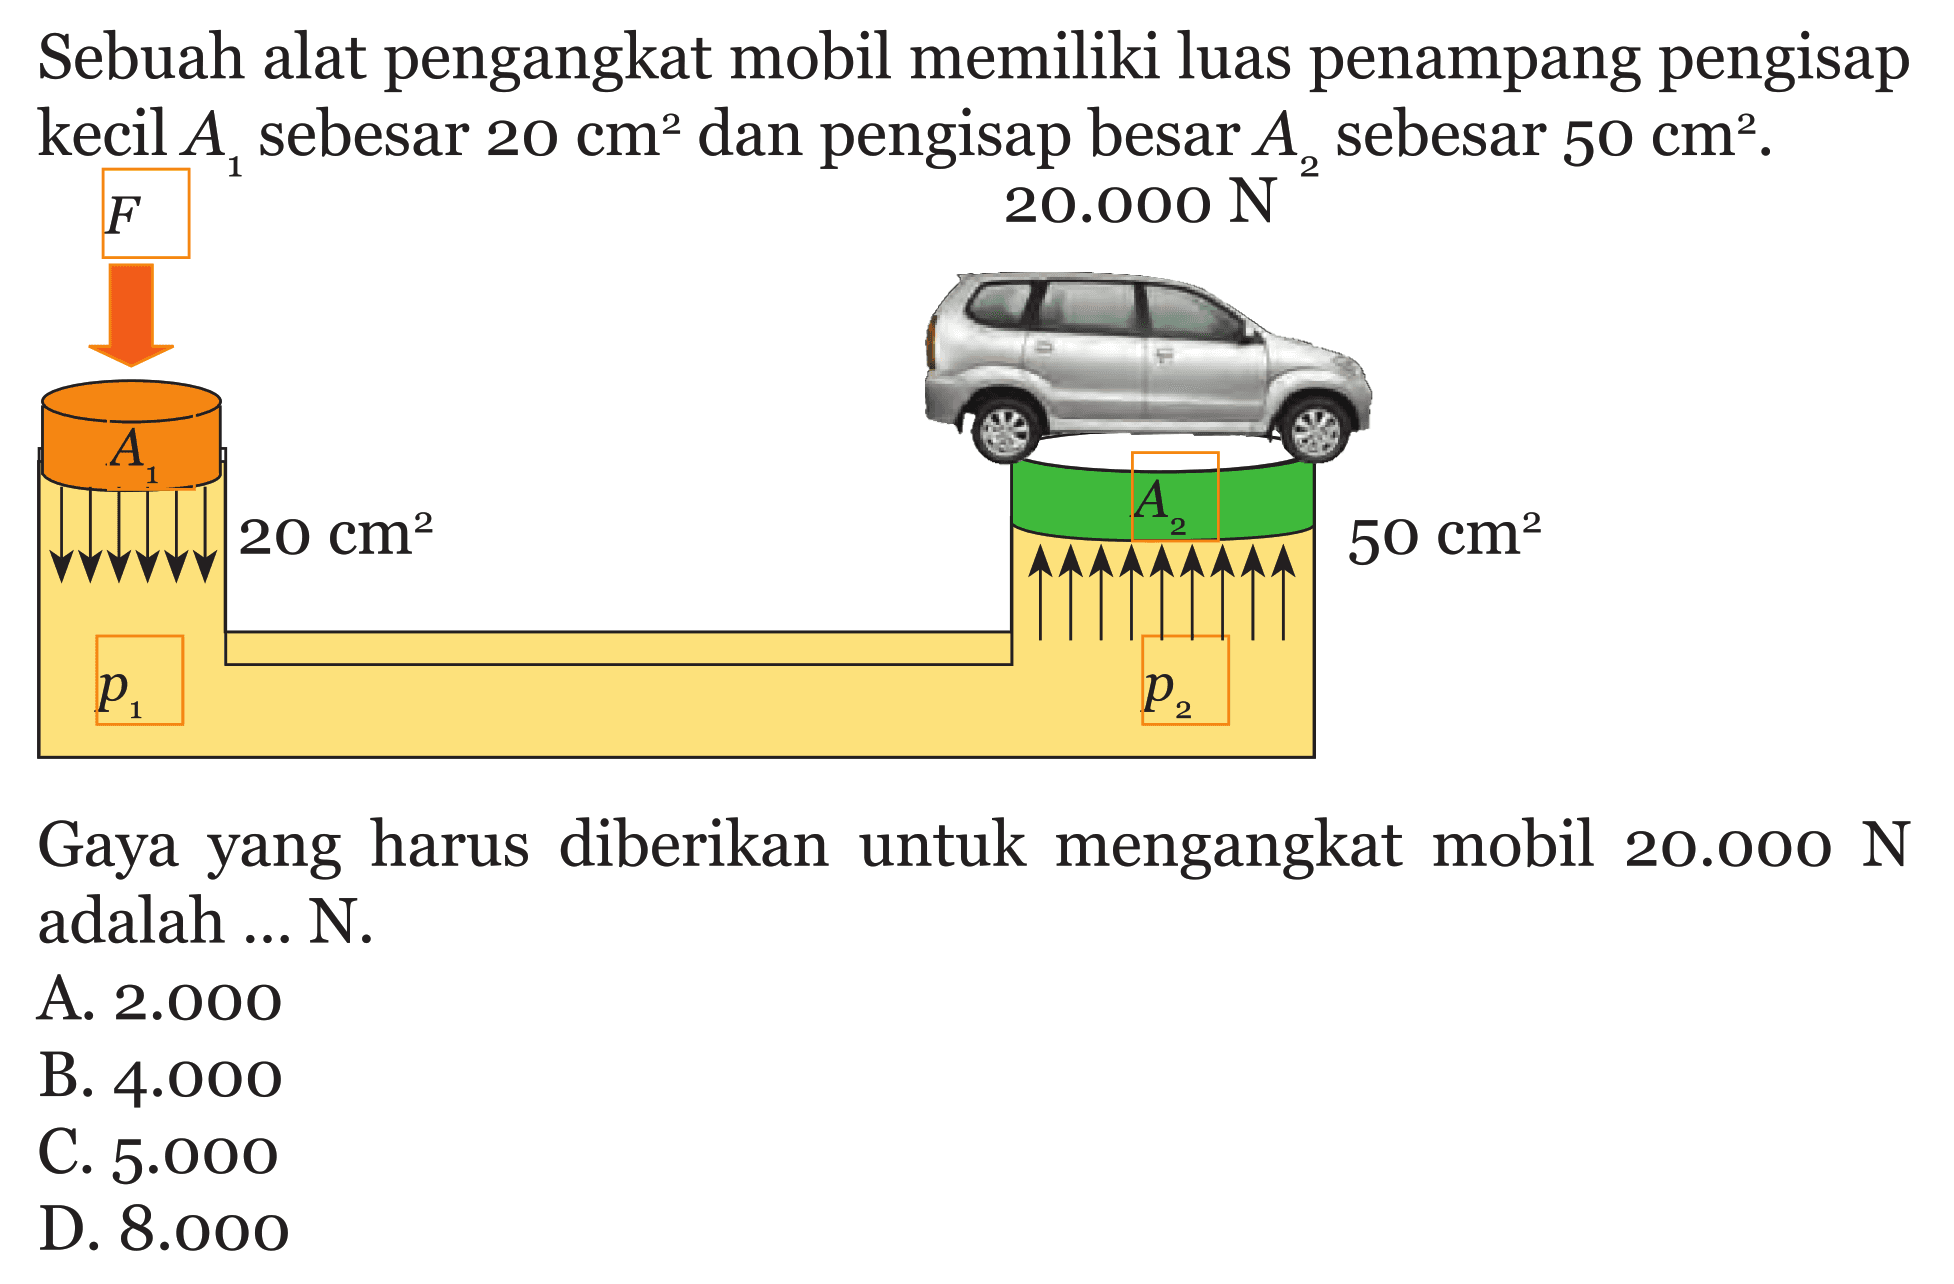 Sebuah alat pengangkat mobil memiliki luas penampang pengisap kecil  A1  sebesar  20 cm^2 dan pengisap besar A2 sebesar 50 cm^2 . Gaya yang harus diberikan untuk mengangkat mobil  20.000 N  adalah ... N.